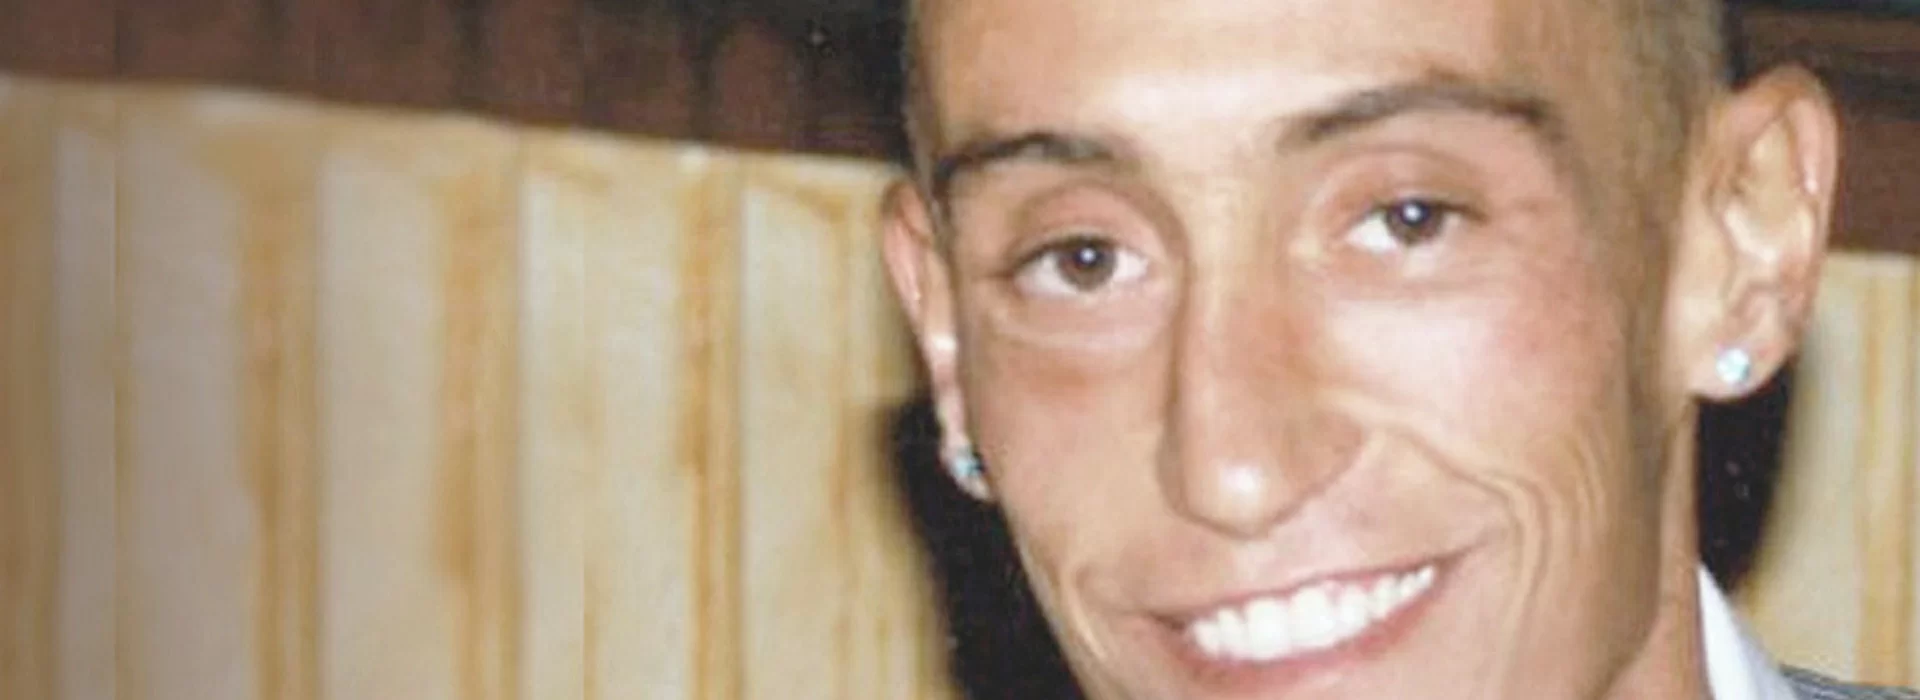 Stefano Cucchi, carabinieri condannati a 12 anni. Costituiti in carcere: “Fu omicidio preterintenzionale”. Appello bis per gli altri due imputati